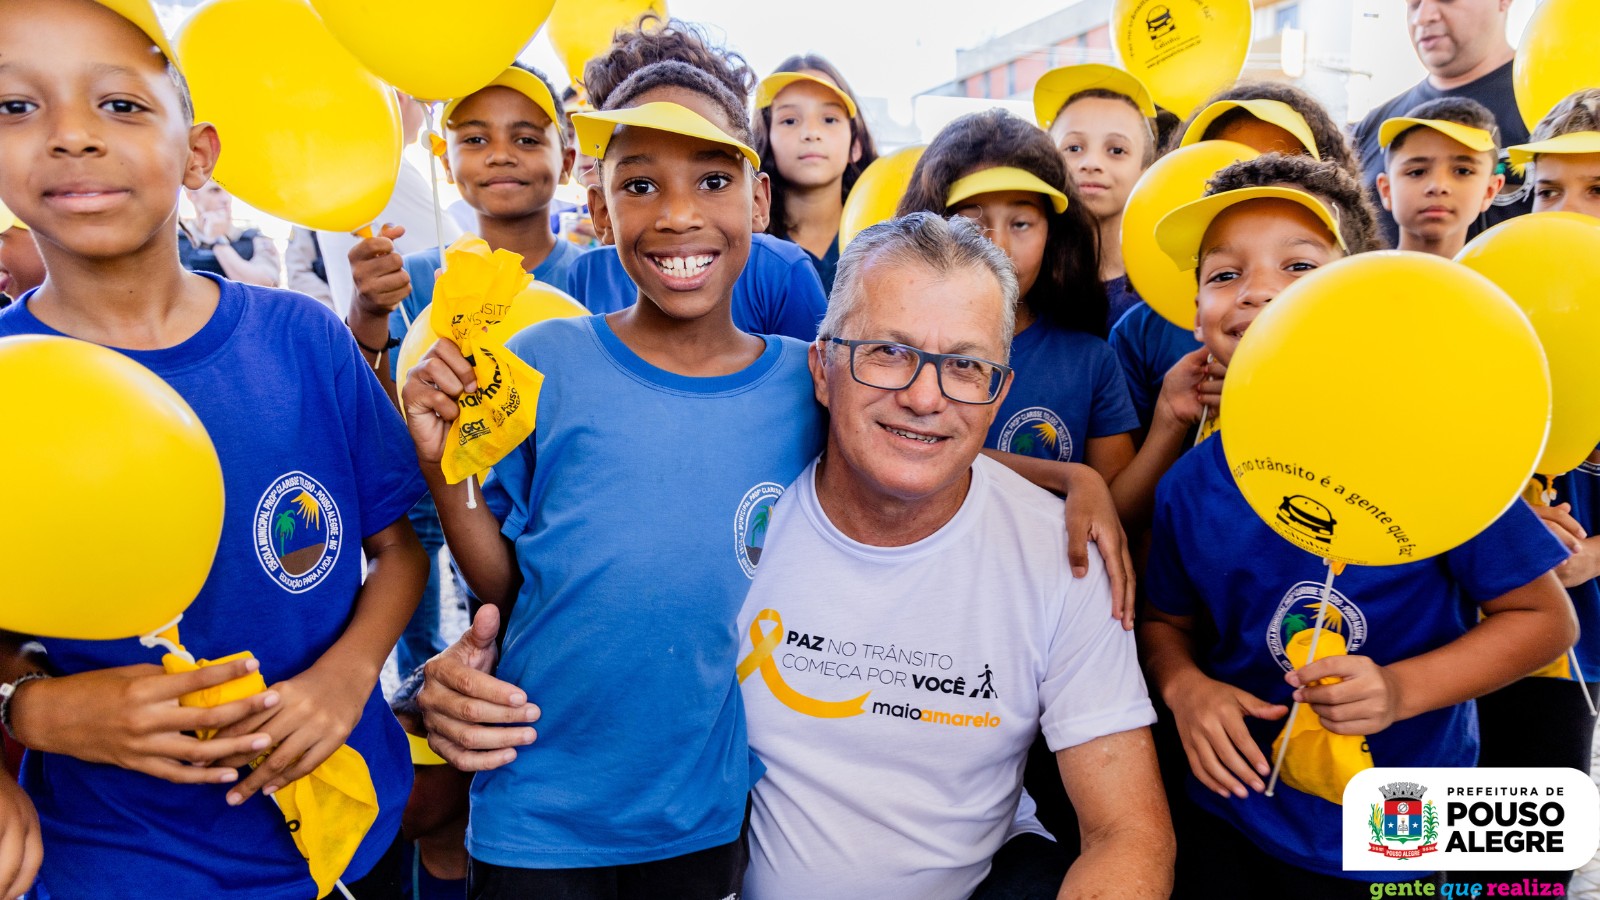 Pouso Alegre incentiva trânsito seguro com campanha “Maio Amarelo”